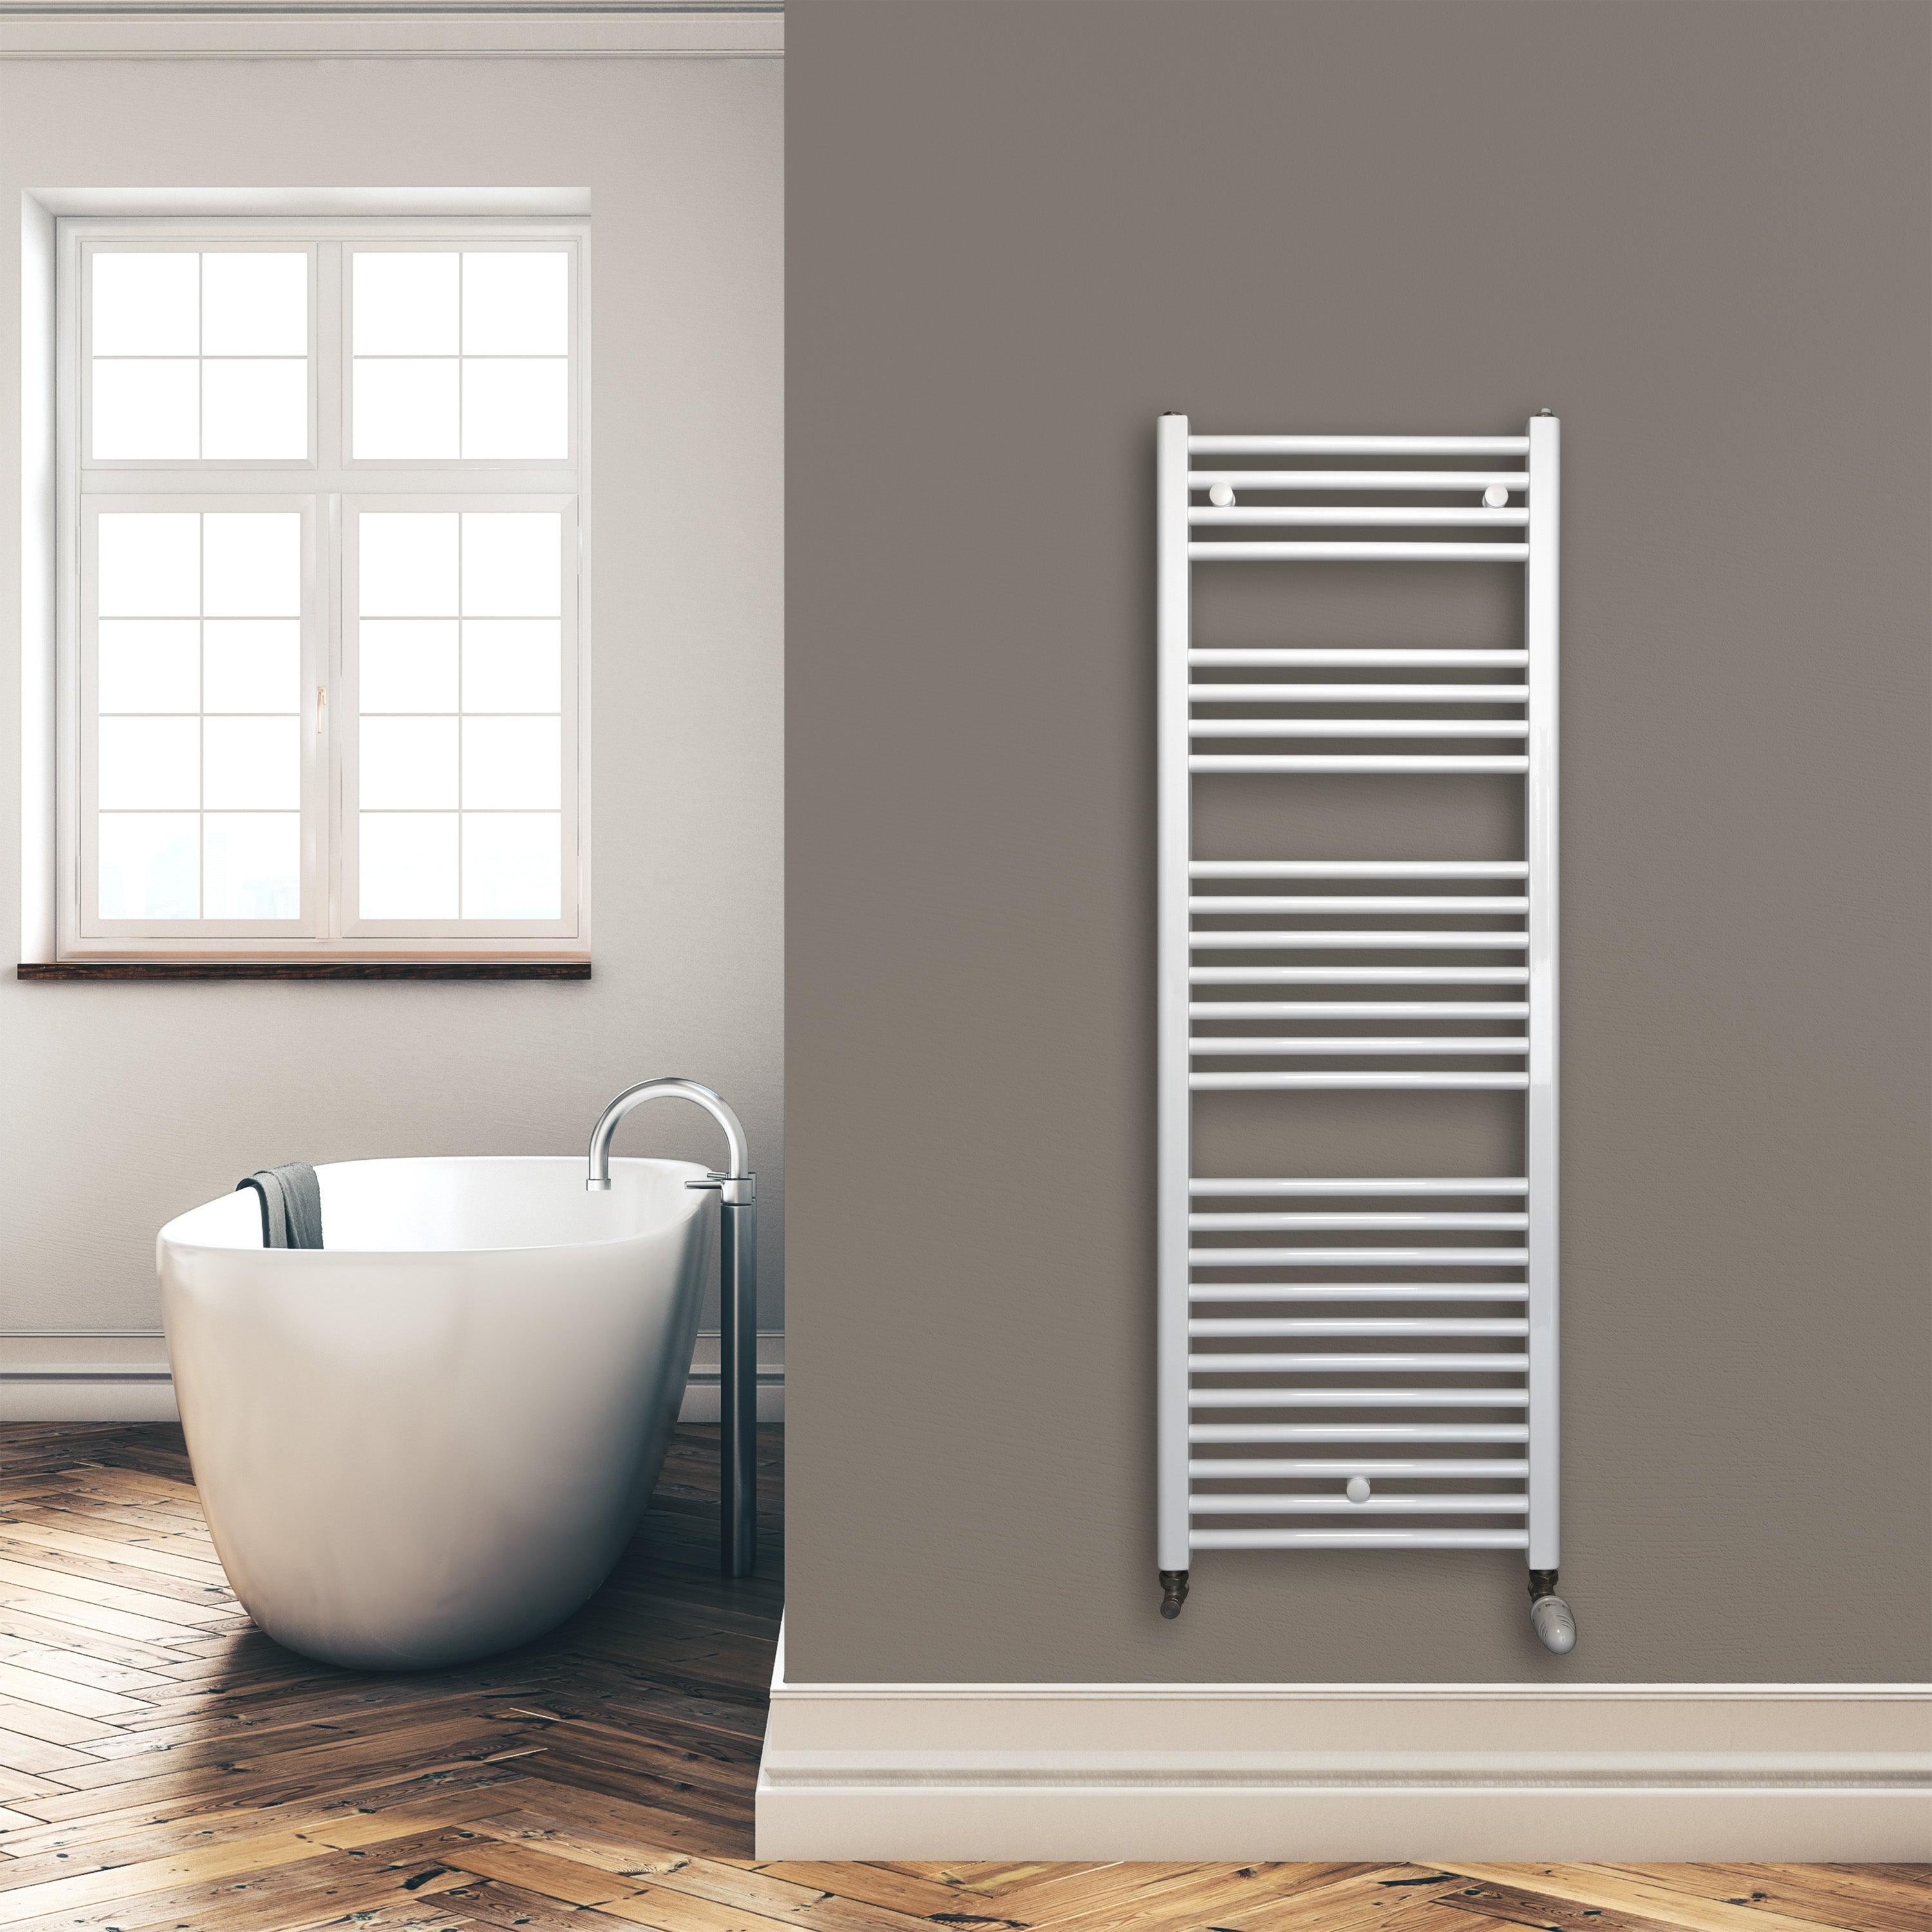 Badheizkörper 1424 x 500 mm gerade mit Standardanschluss Handtuchhalter Badezimmer Heizung Handtuchwärmer weiß Montagebeispiel - heizkoerper.shop